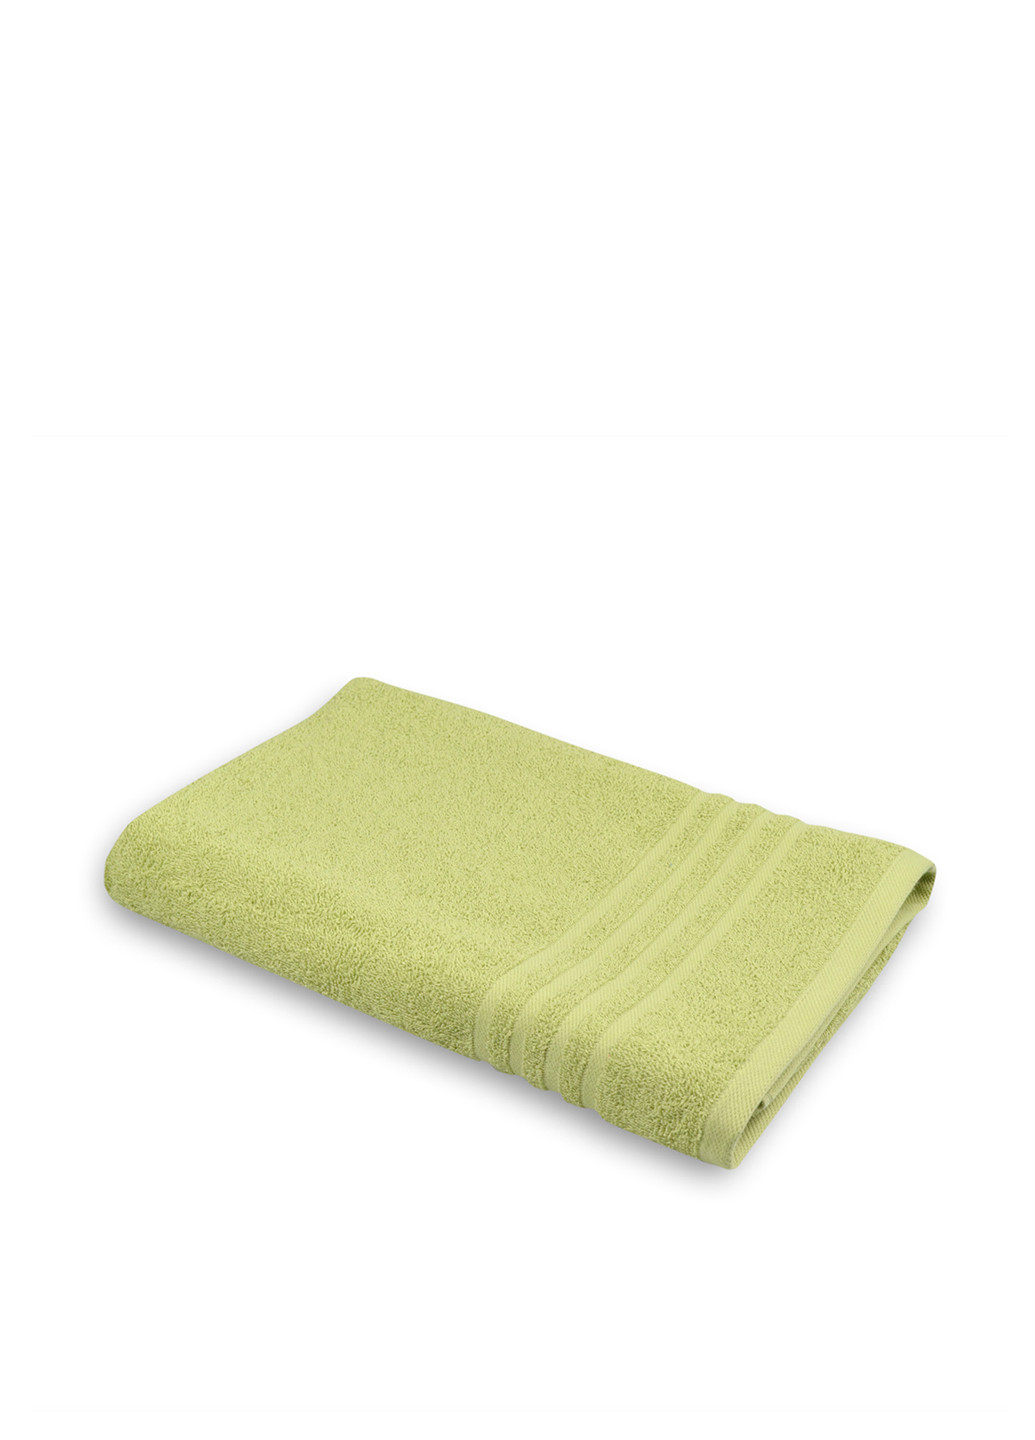 Home Line полотенце, 70х140 см однотонный оливковый производство - Индия